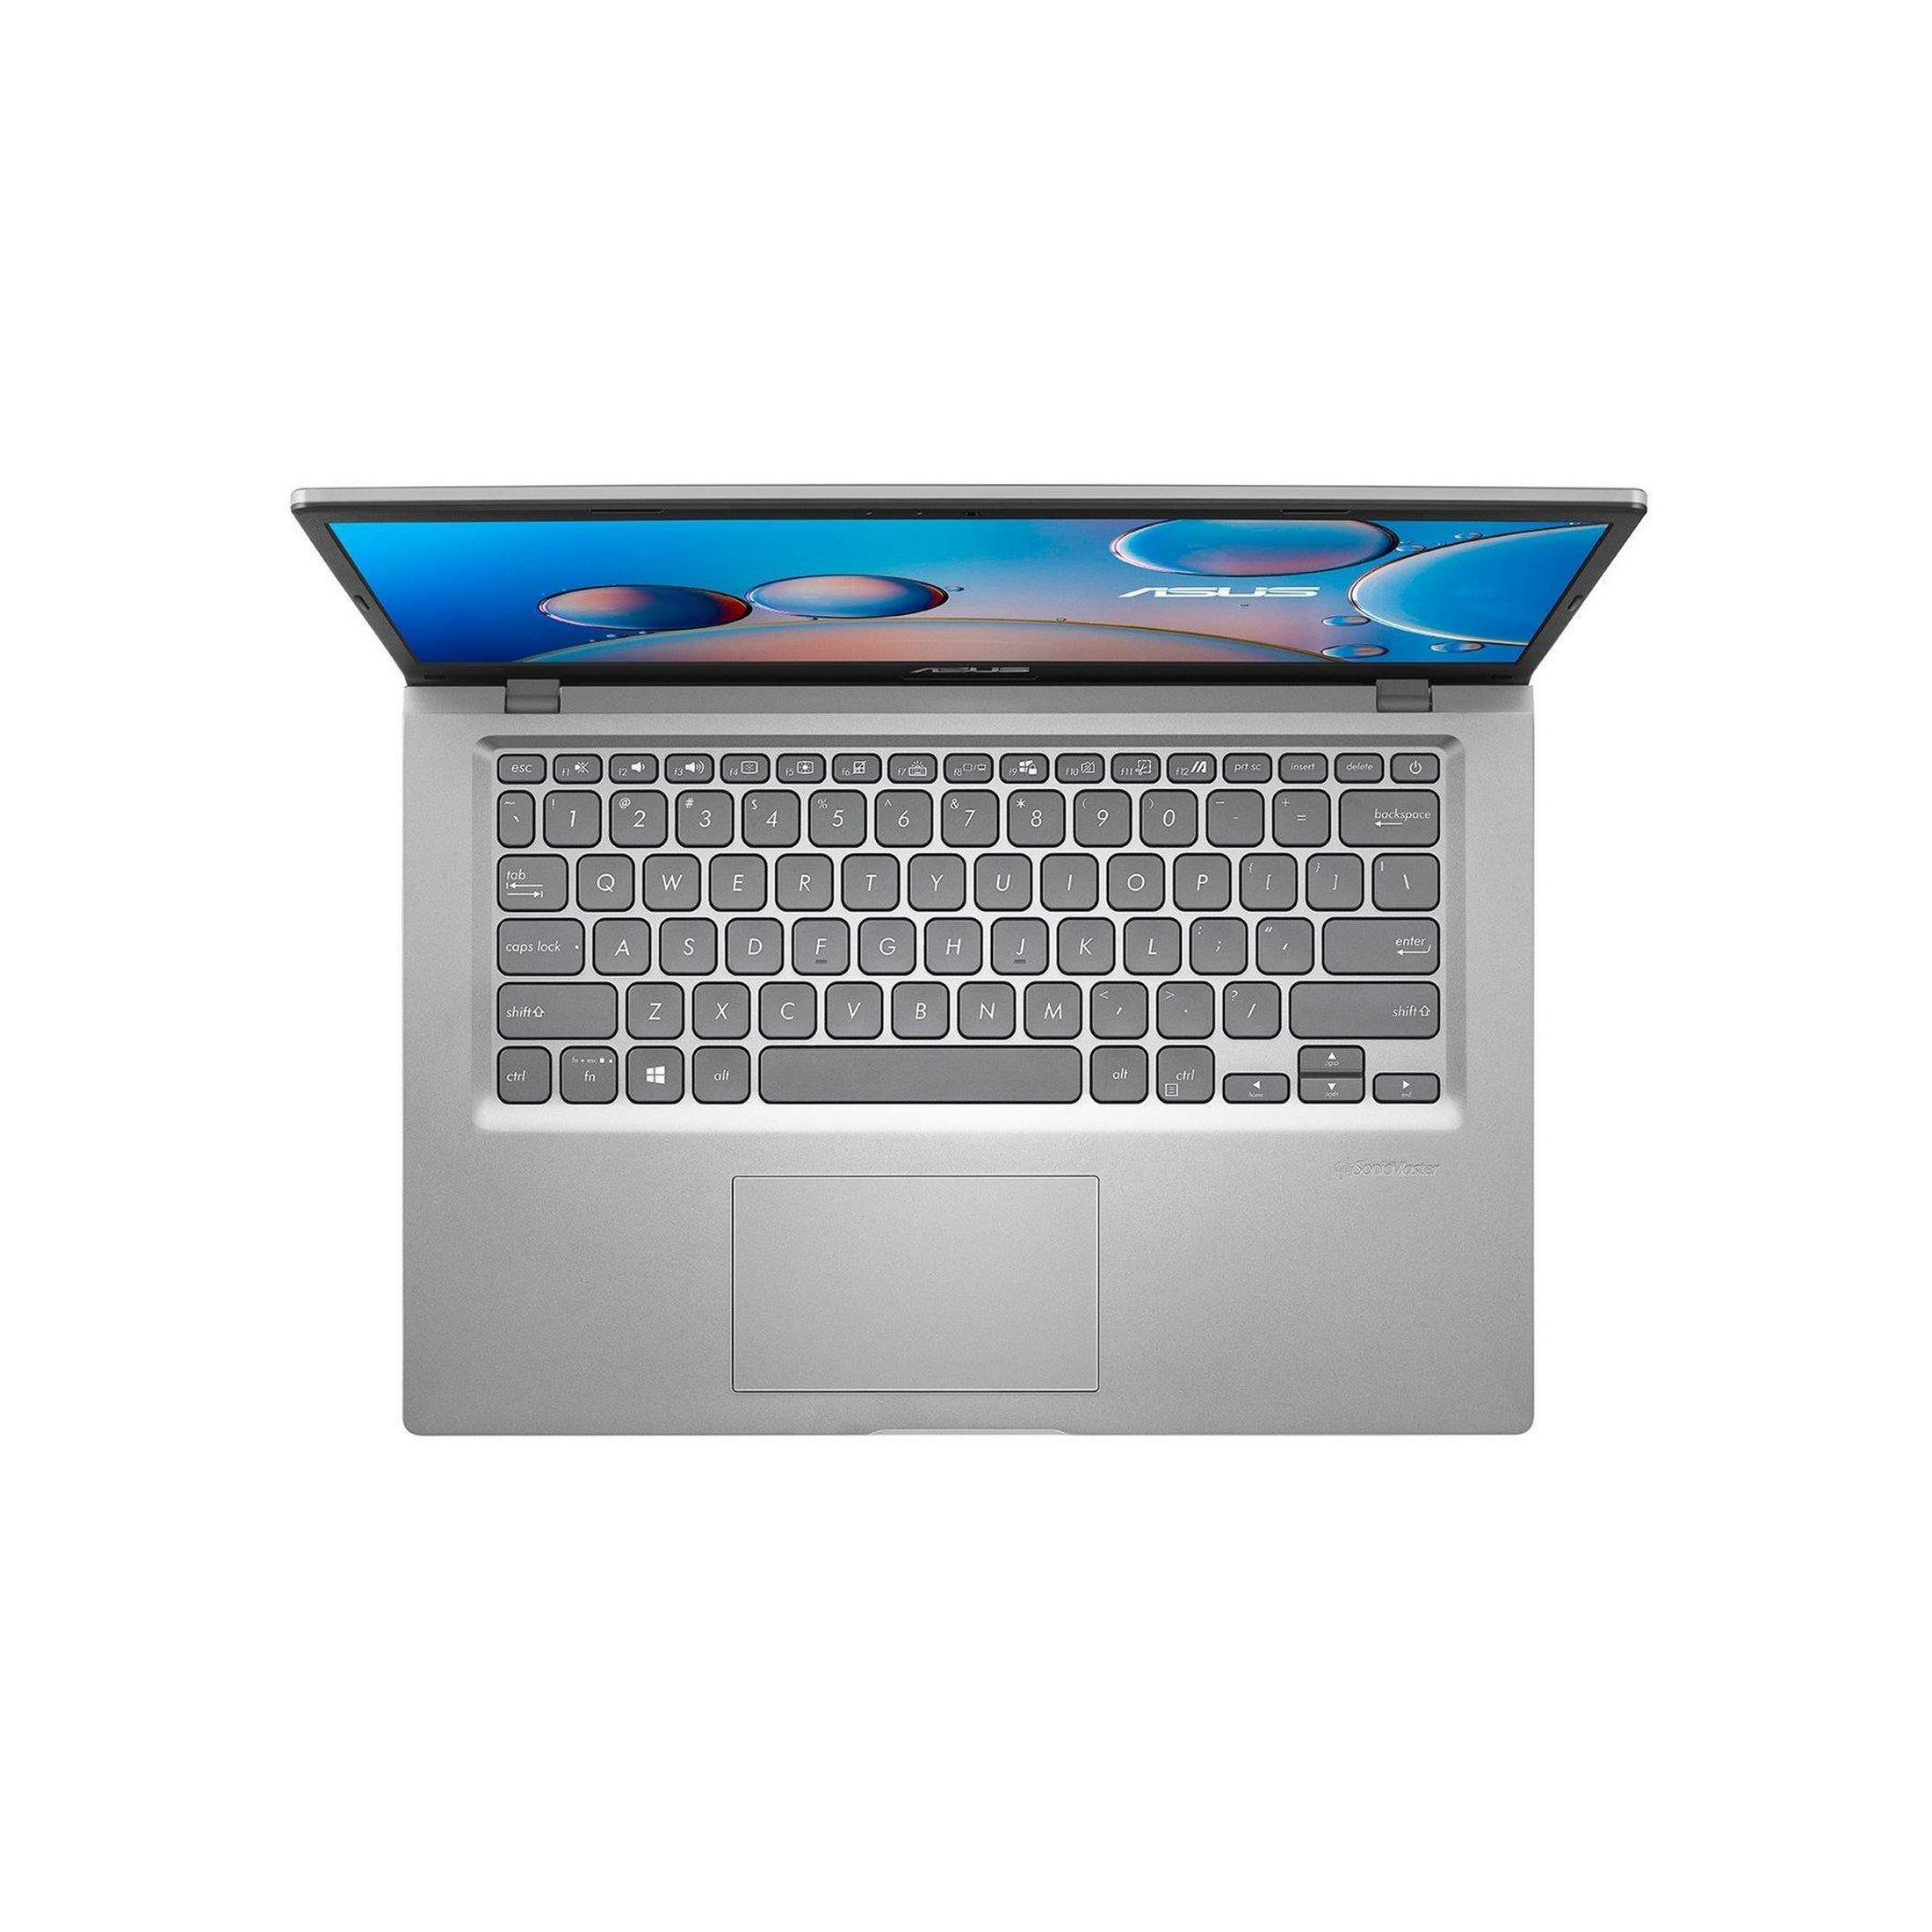 ASUS X415JA-EK031T 14" Laptop Intel Core i3-1005G1 8GB RAM 256GB SSD - Silver